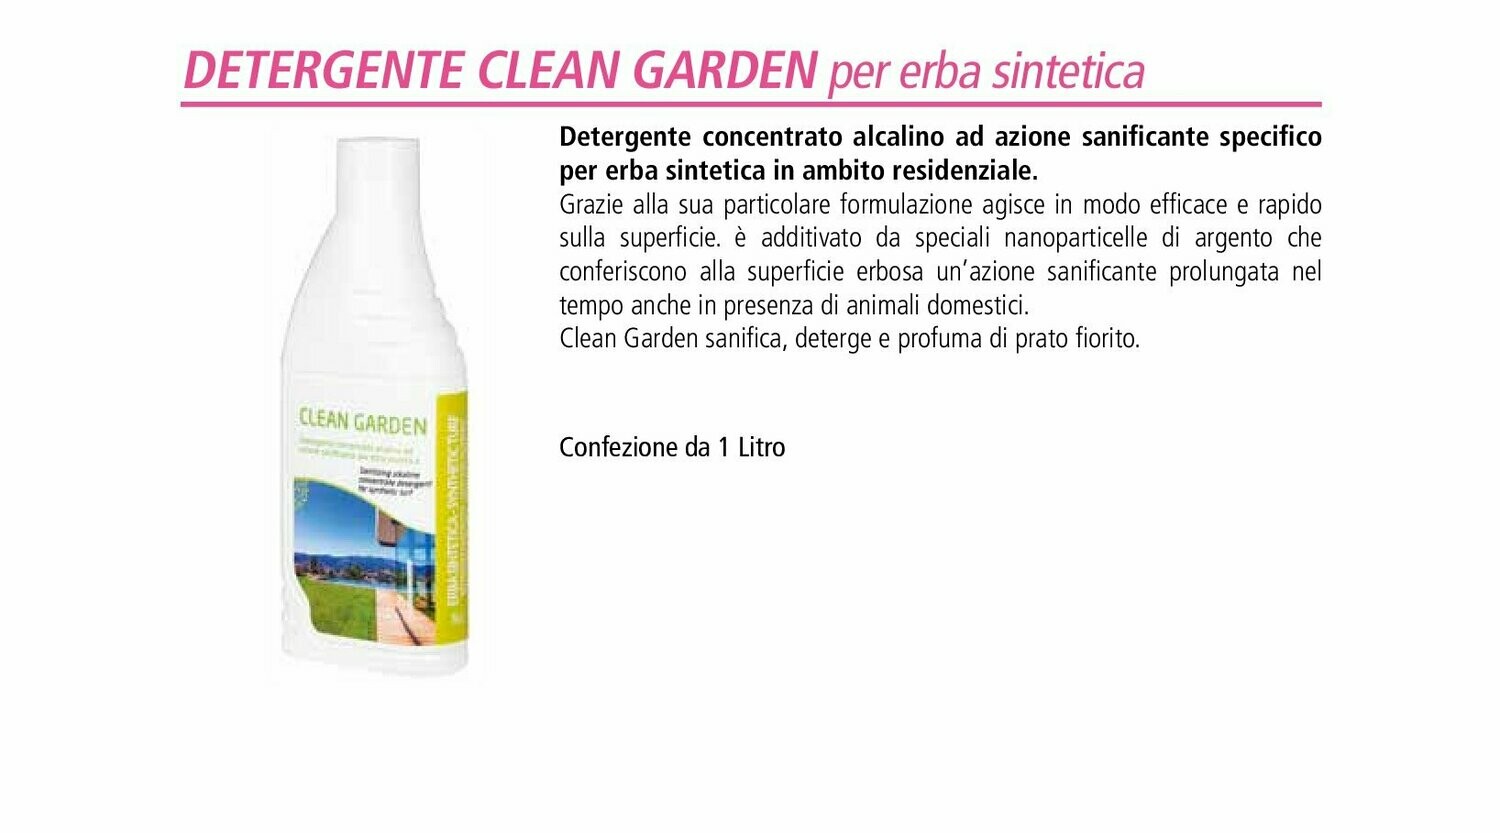 Clean Garden detergente sanificante confezione da LT 1